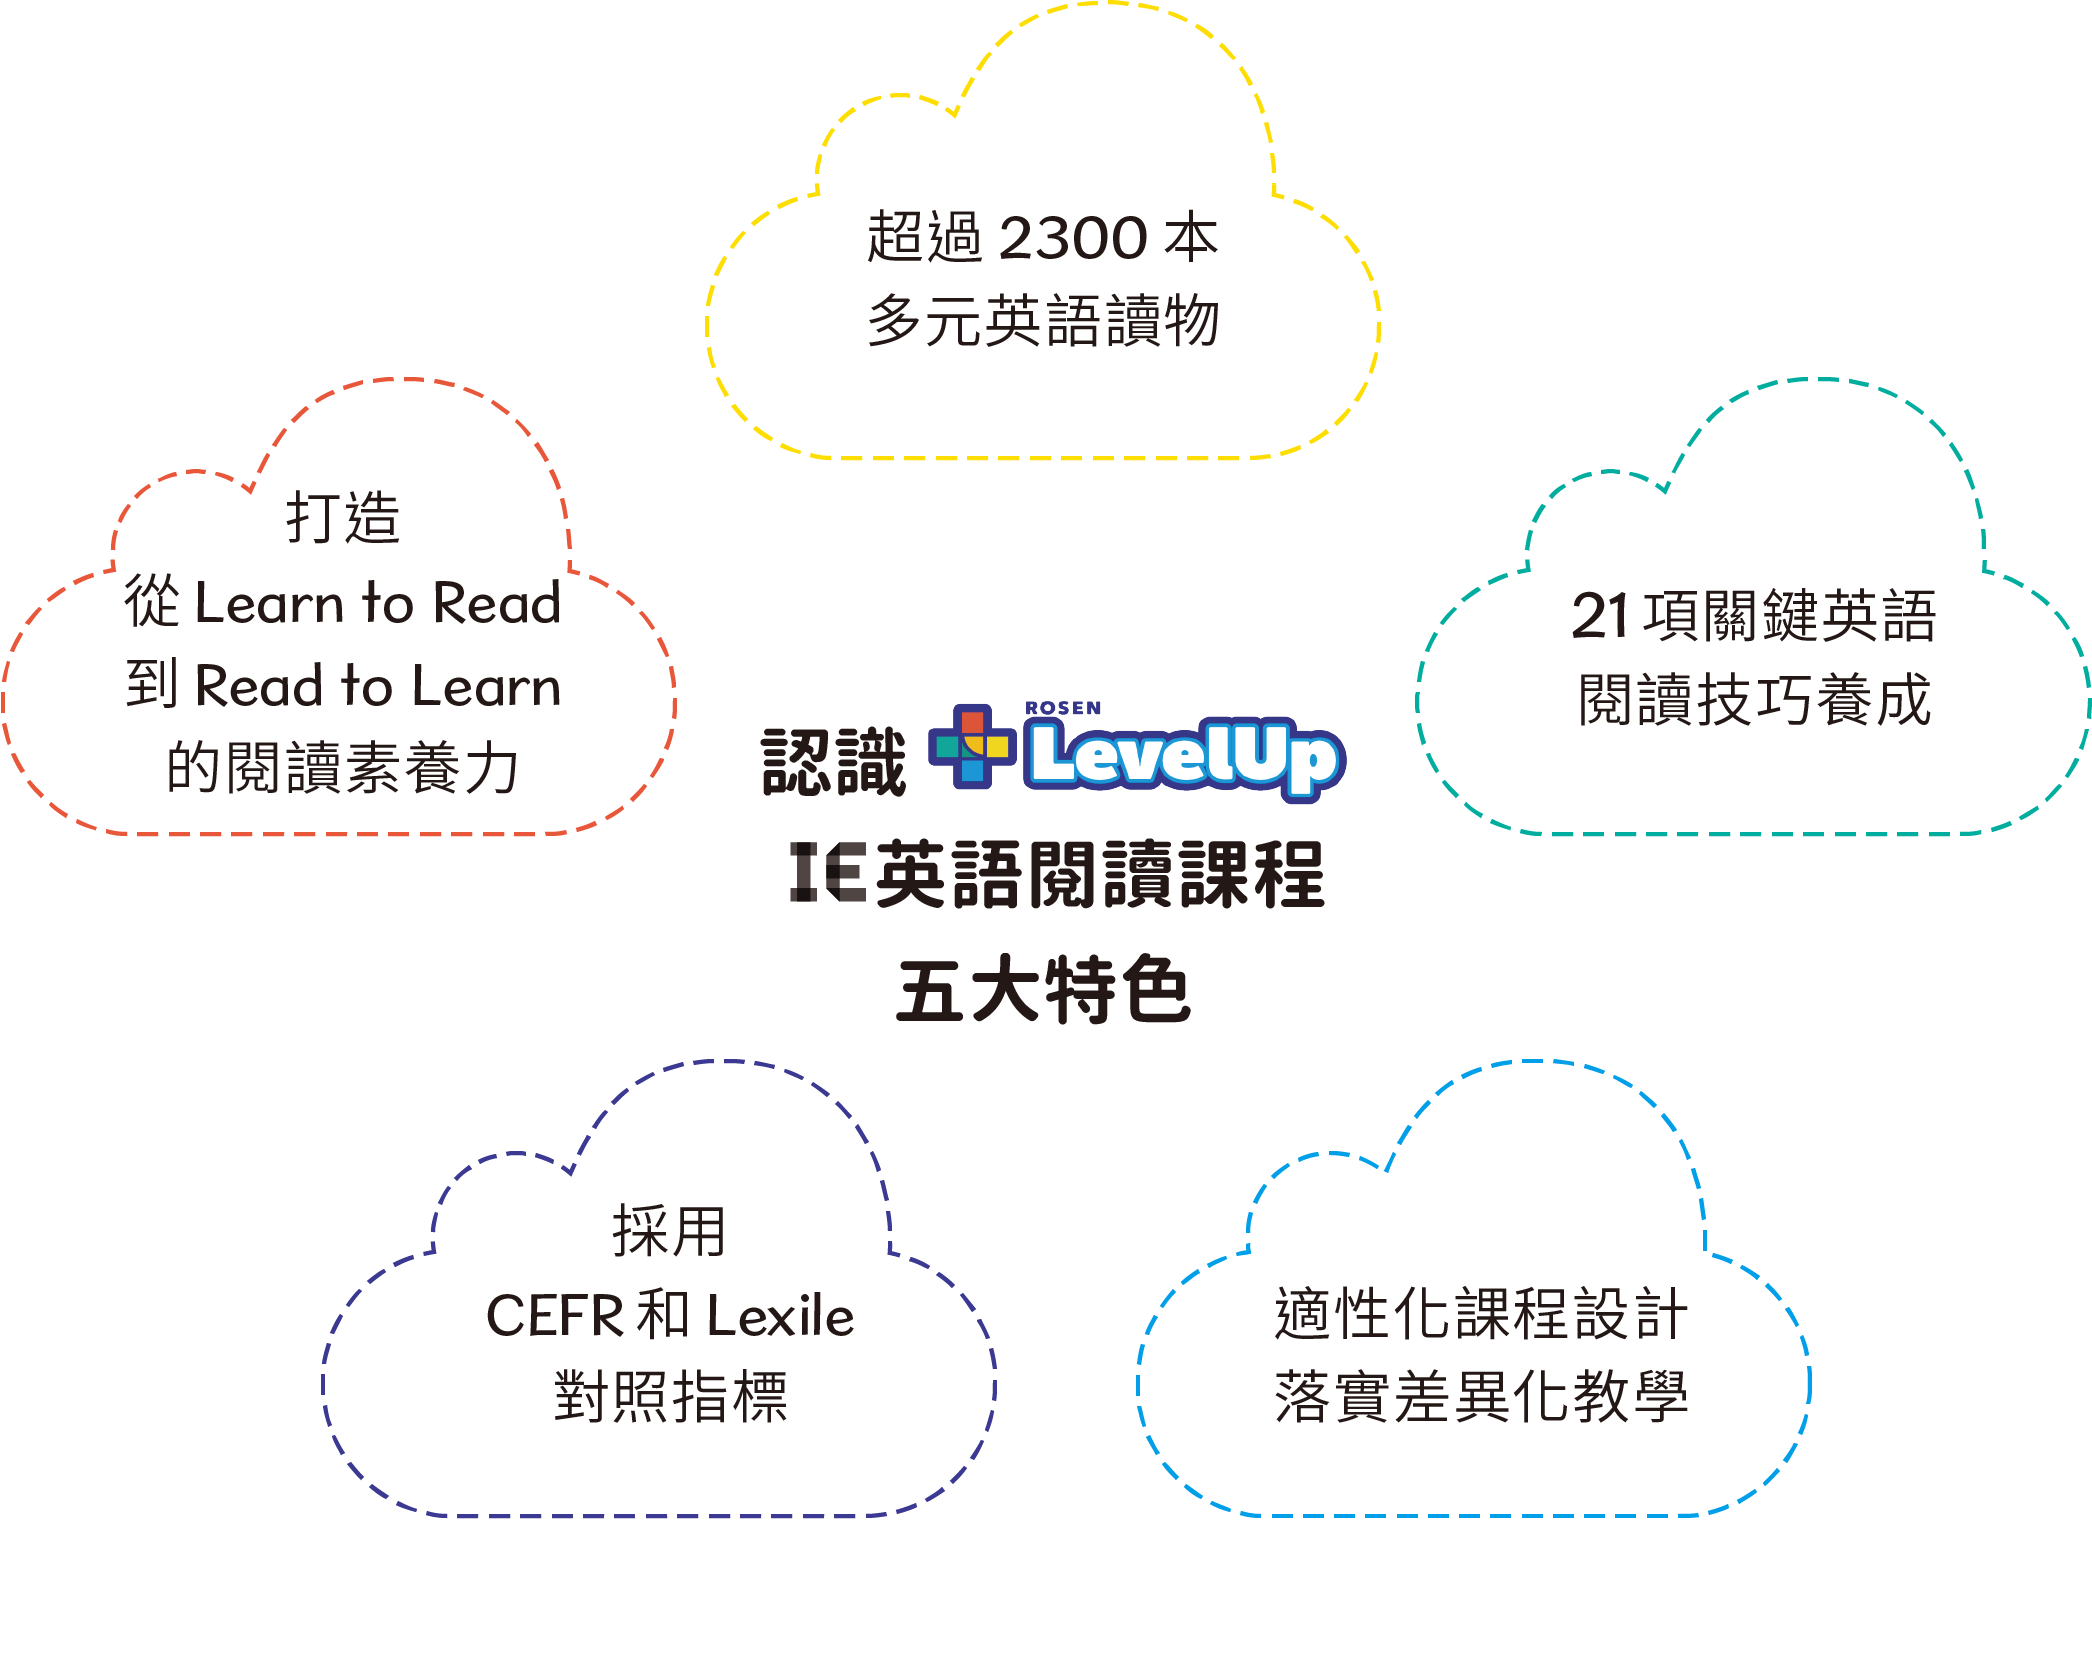 Levelup Ie英語閱讀推廣計劃 適性化線上英語閱讀平台 Caves Connect 敦煌英語教學資源互動平台